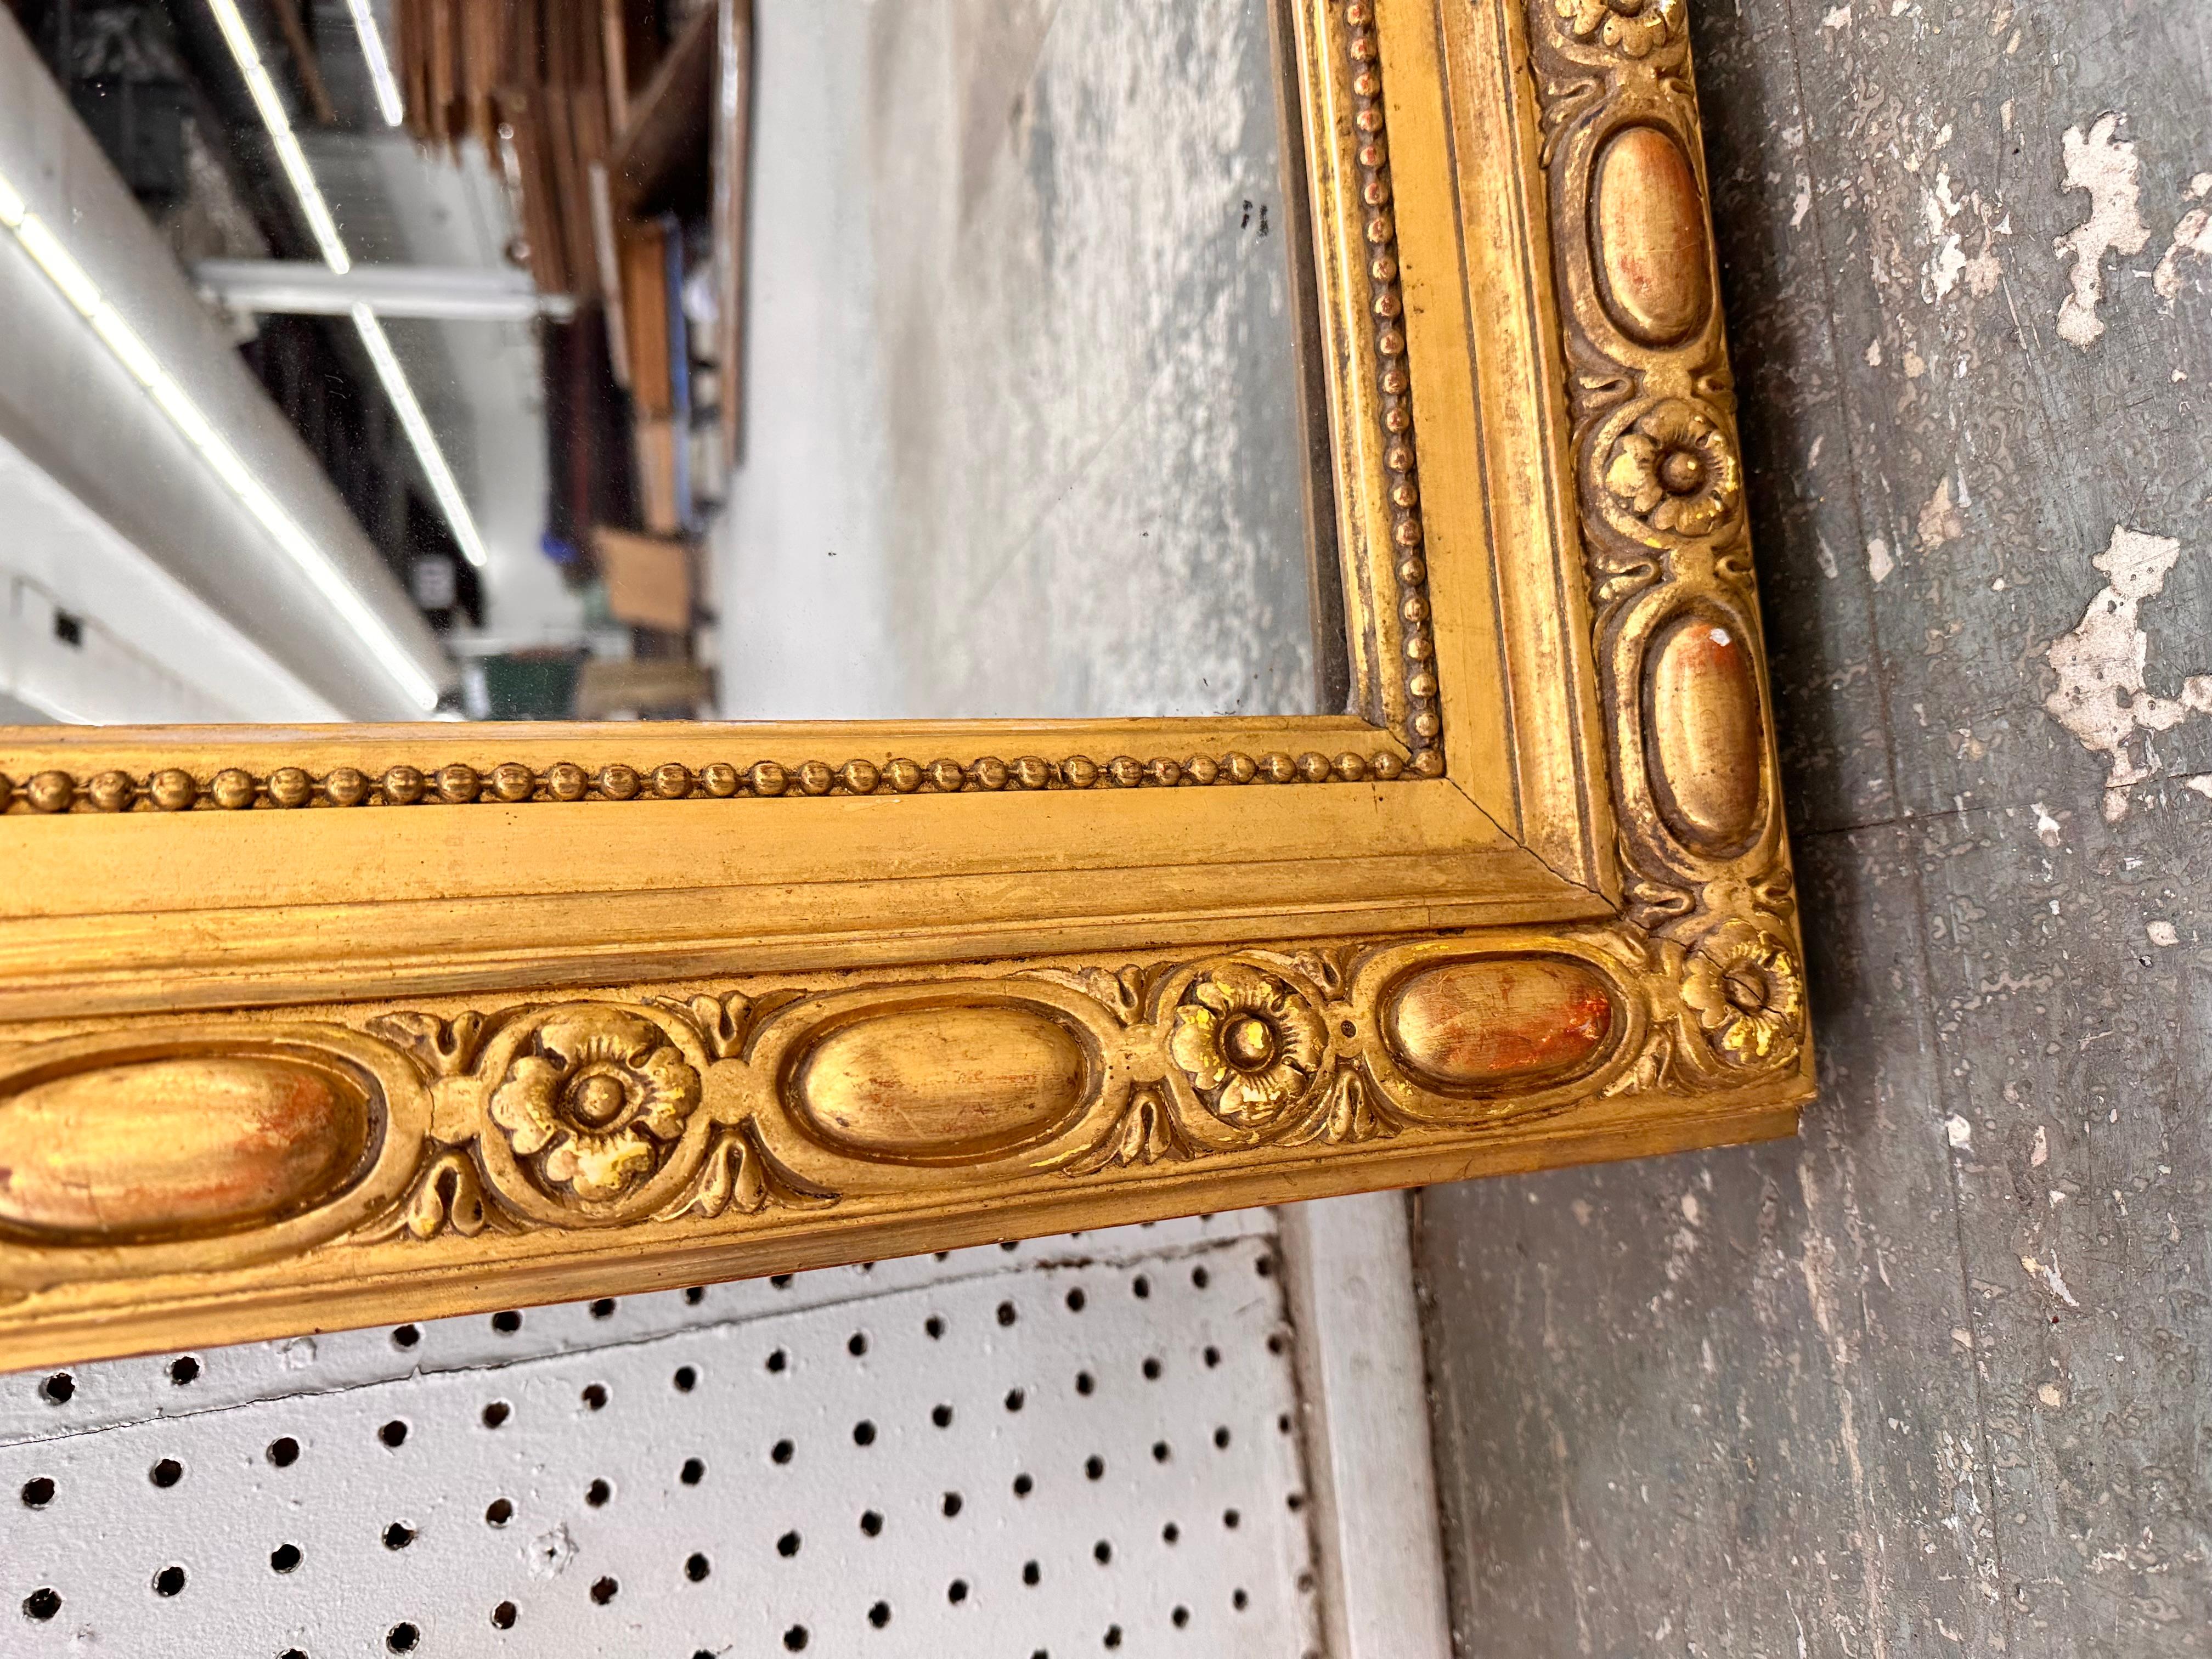 Dieser französische Spiegel aus dem 19. Jahrhundert ist ein Spitzenprodukt seiner Klasse! Mit seinen atemberaubenden vergoldeten Verzierungen wie der handgeschnitzten Kante, der kunstvollen Kartusche und der übergroßen Silhouette wird dieser Spiegel